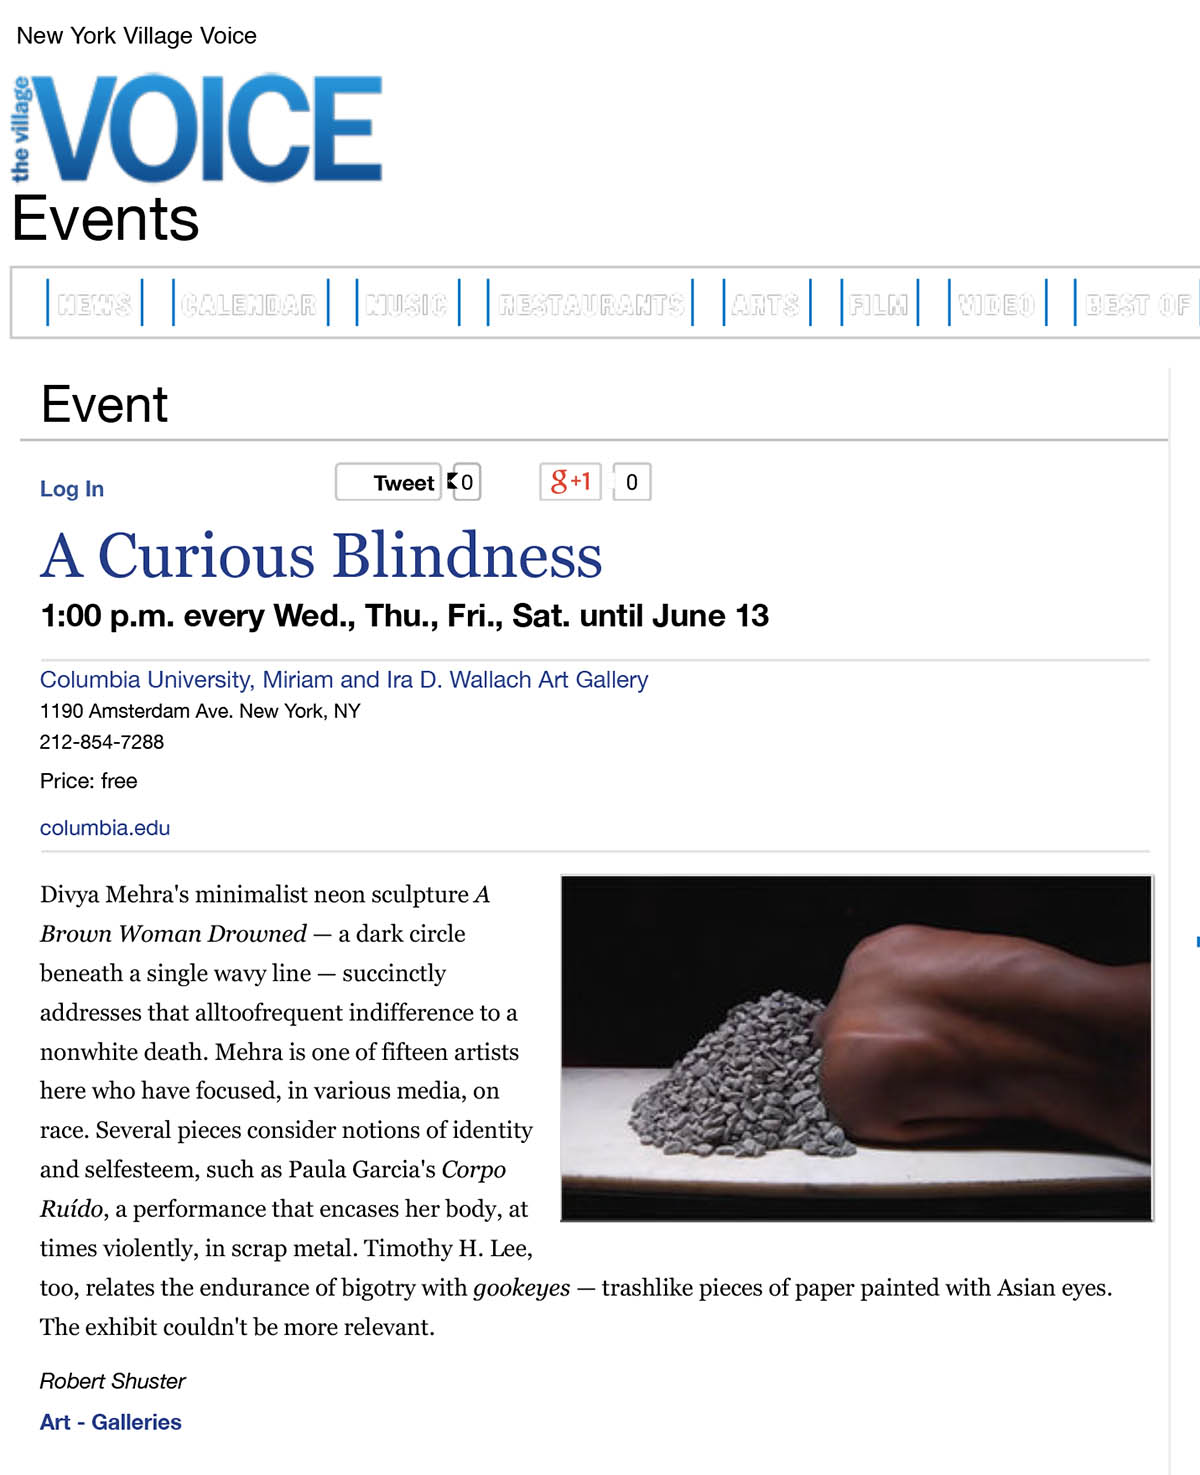 A Curious Blindness_Village Voice